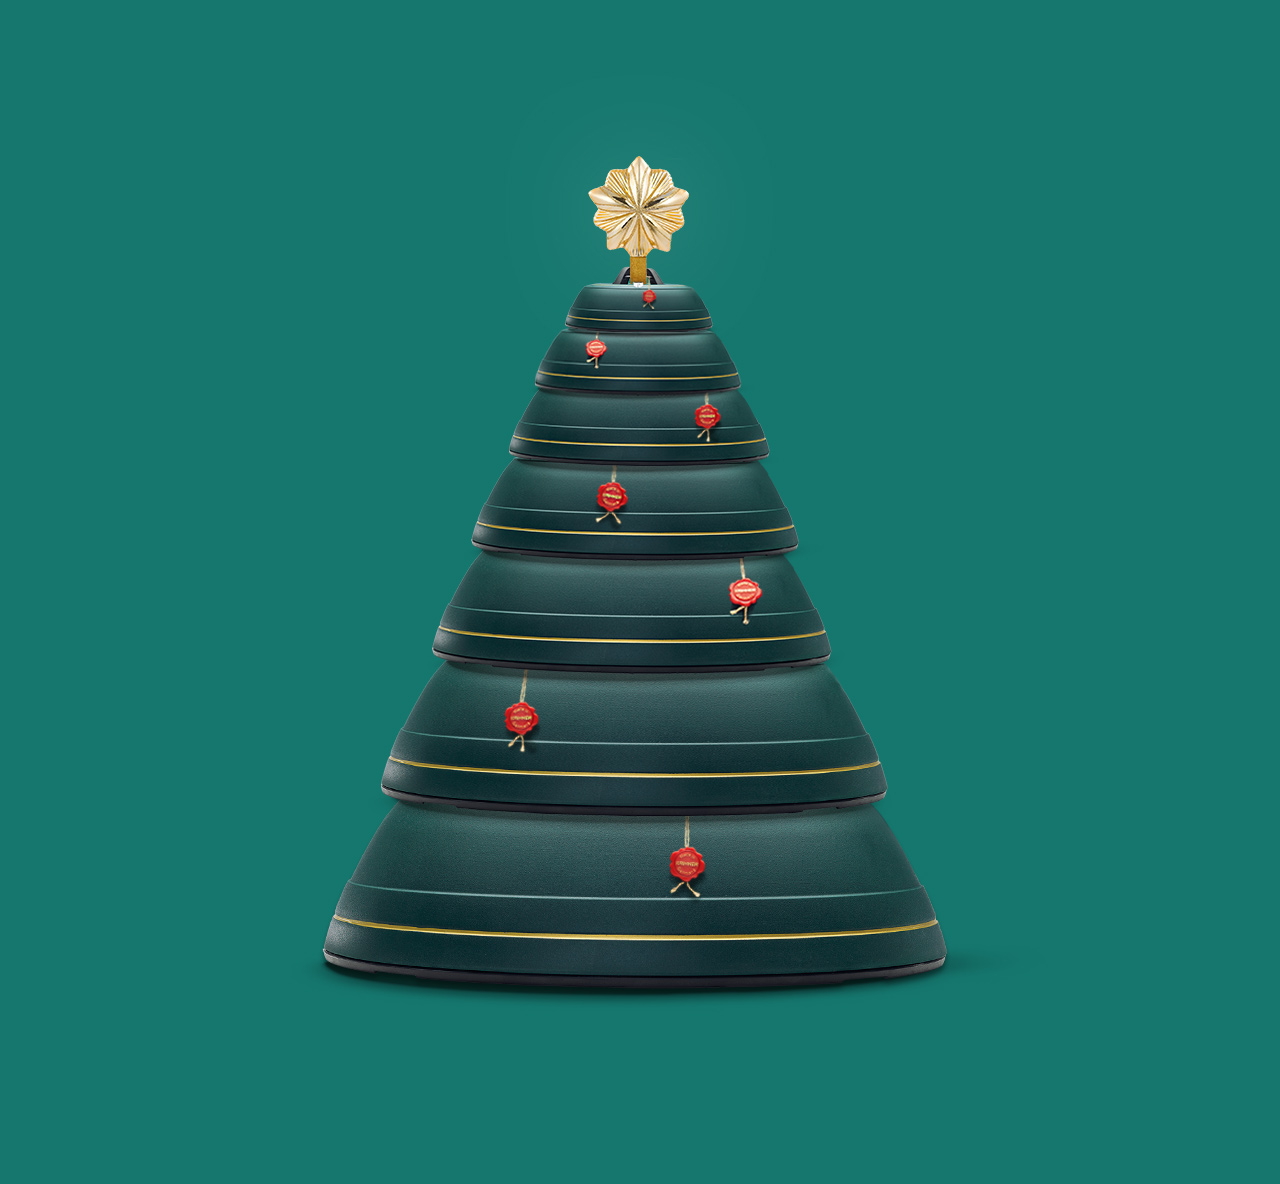 Krinner Christbaumständer, die zu einem Weihnachtsbaum aufgestellt sind. Für den Social Media Kanal unseres Kunden Krinner haben wir Key Visuals und Aktionen erstellt.